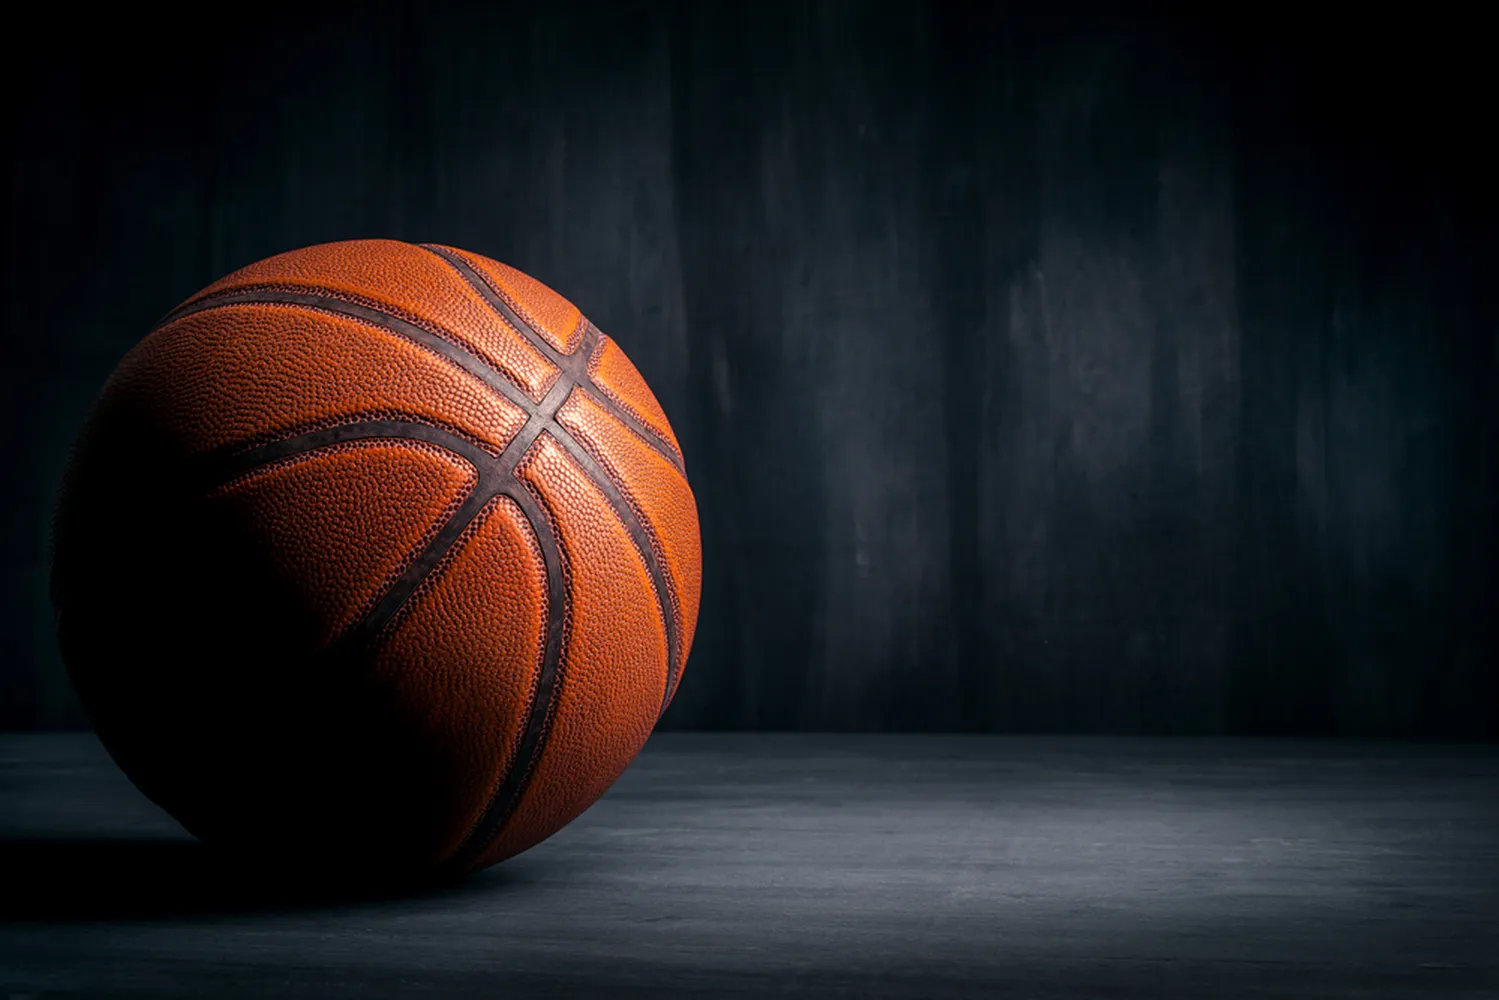 پوستر تیره ورزشی طرح توپ بسکتبال